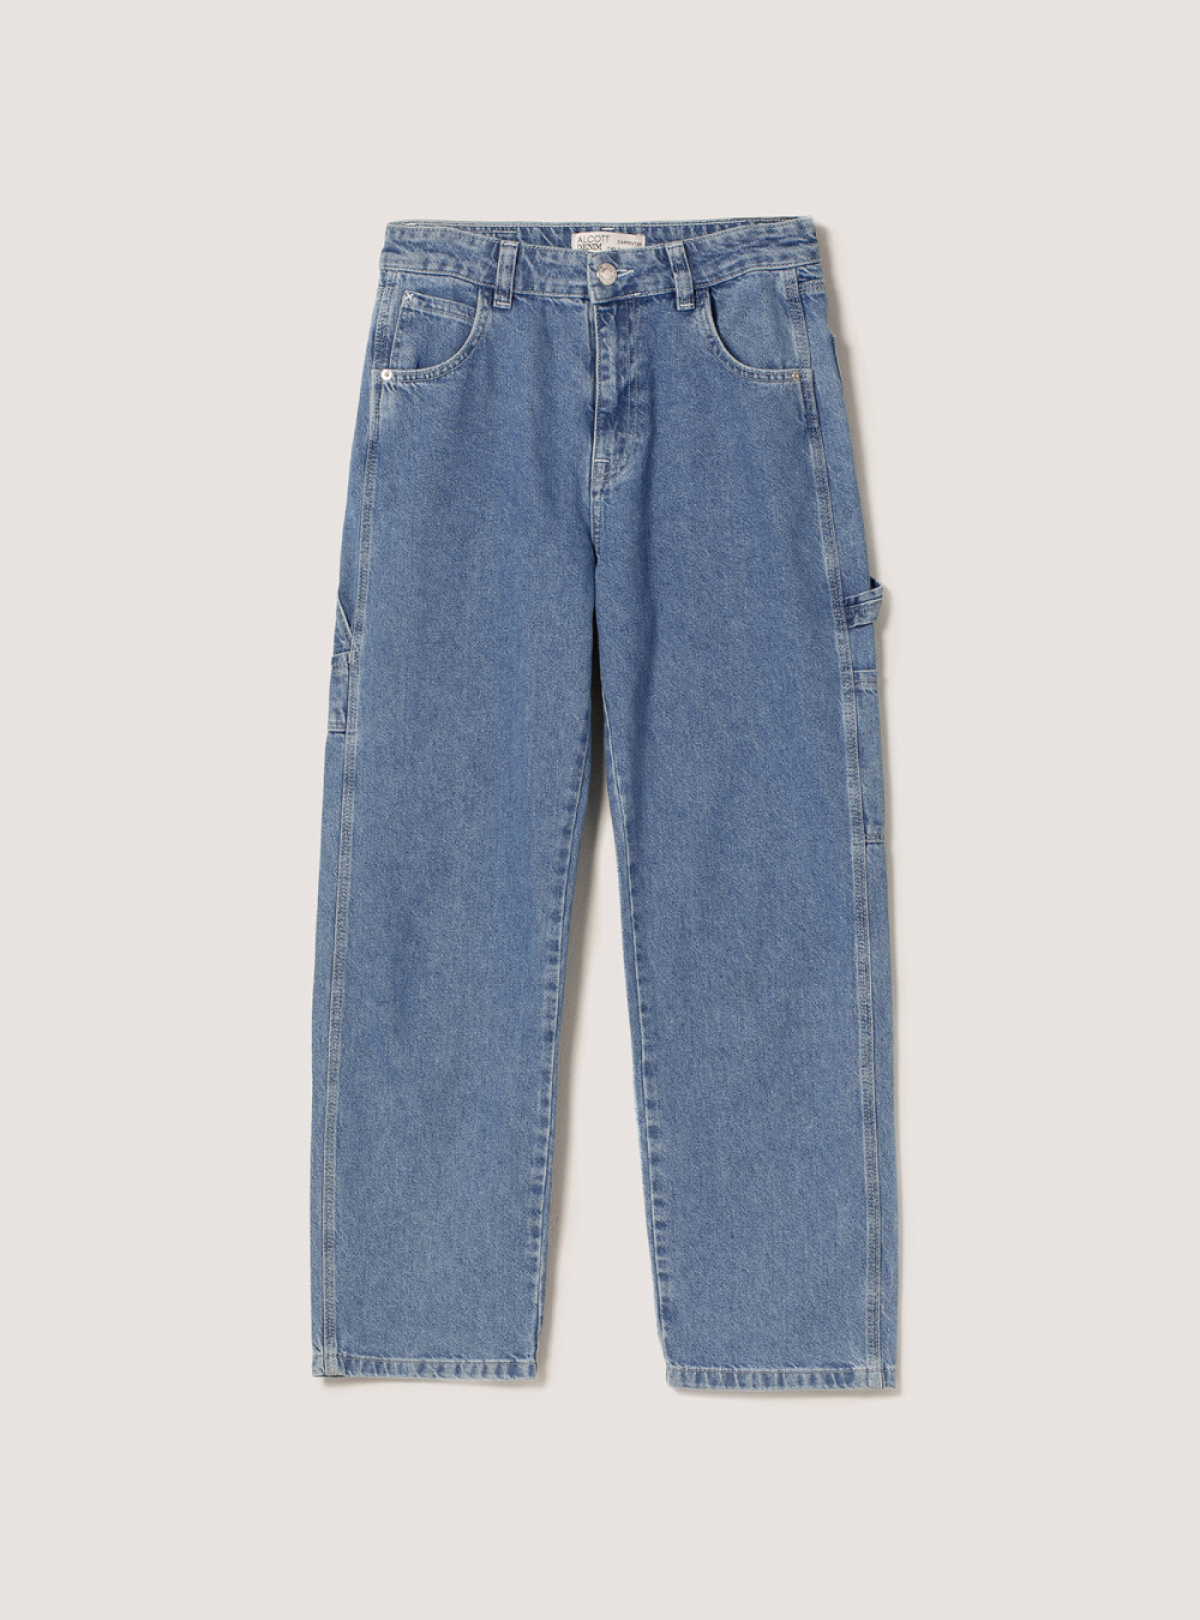 Cotton carpenter jeans